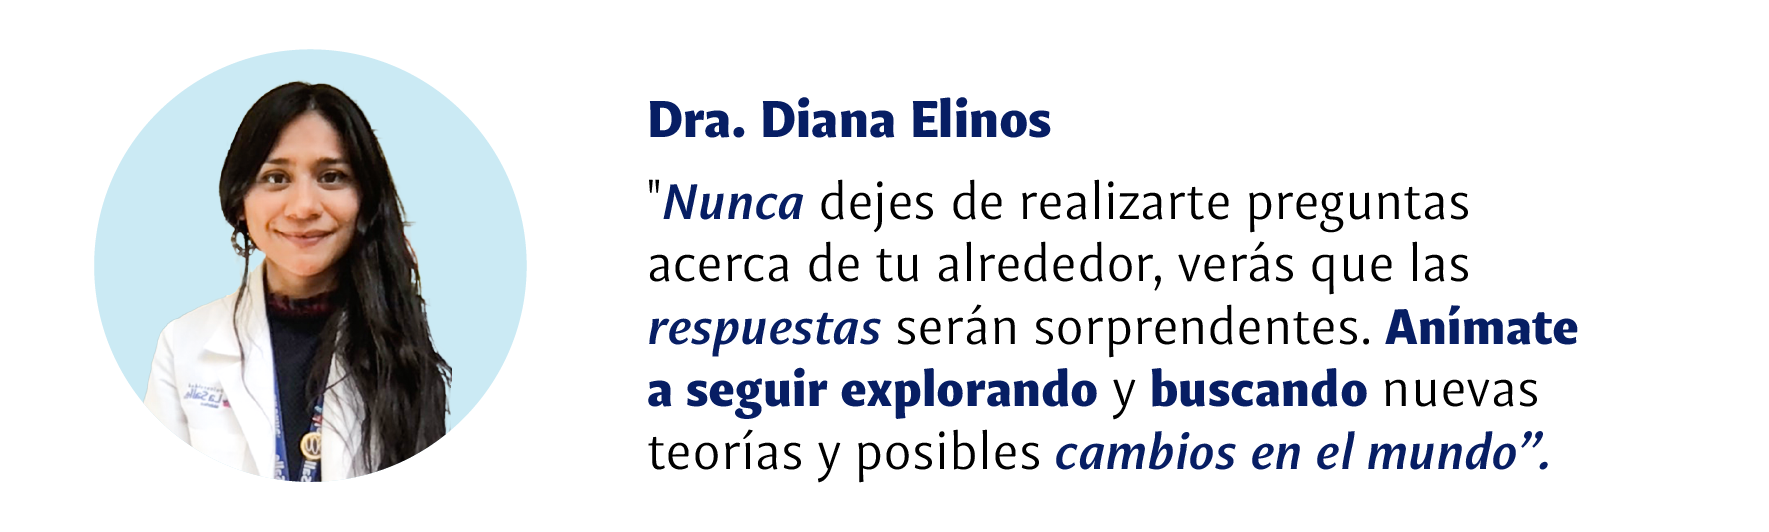 Dra Diana Elinos: Nunca dejes de realizarte preguntas acerca de tu alrededor, verás que las respuestas serán sorprendentes. Anímate a seguir explorando y buscando nuevas teorías y posibles cambios en el mundo.